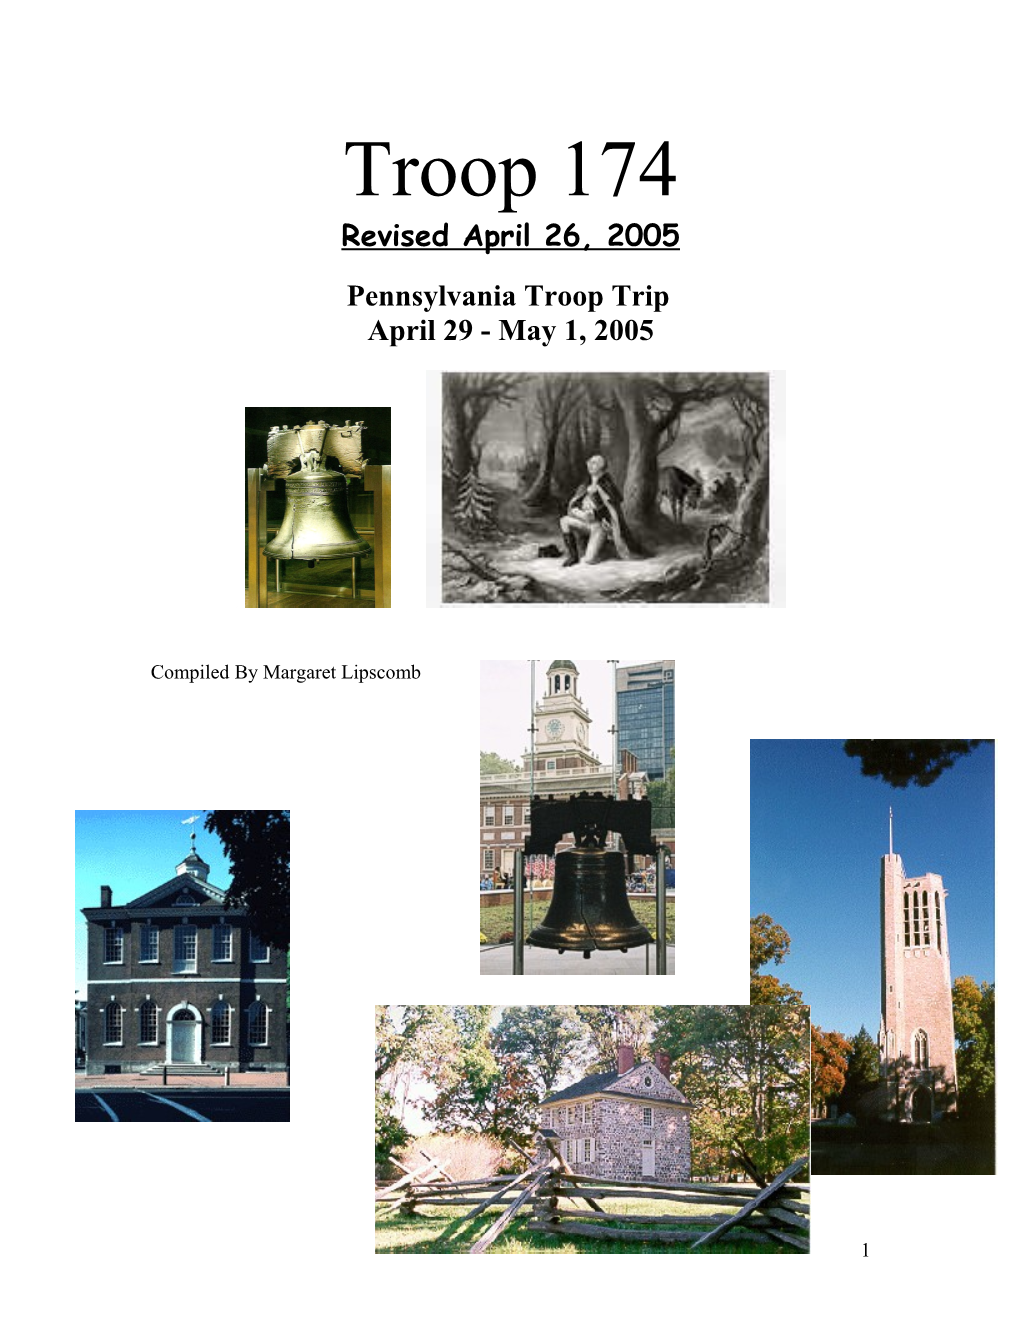 Pennsylvania Troop Trip April 29 - May 1, 2005